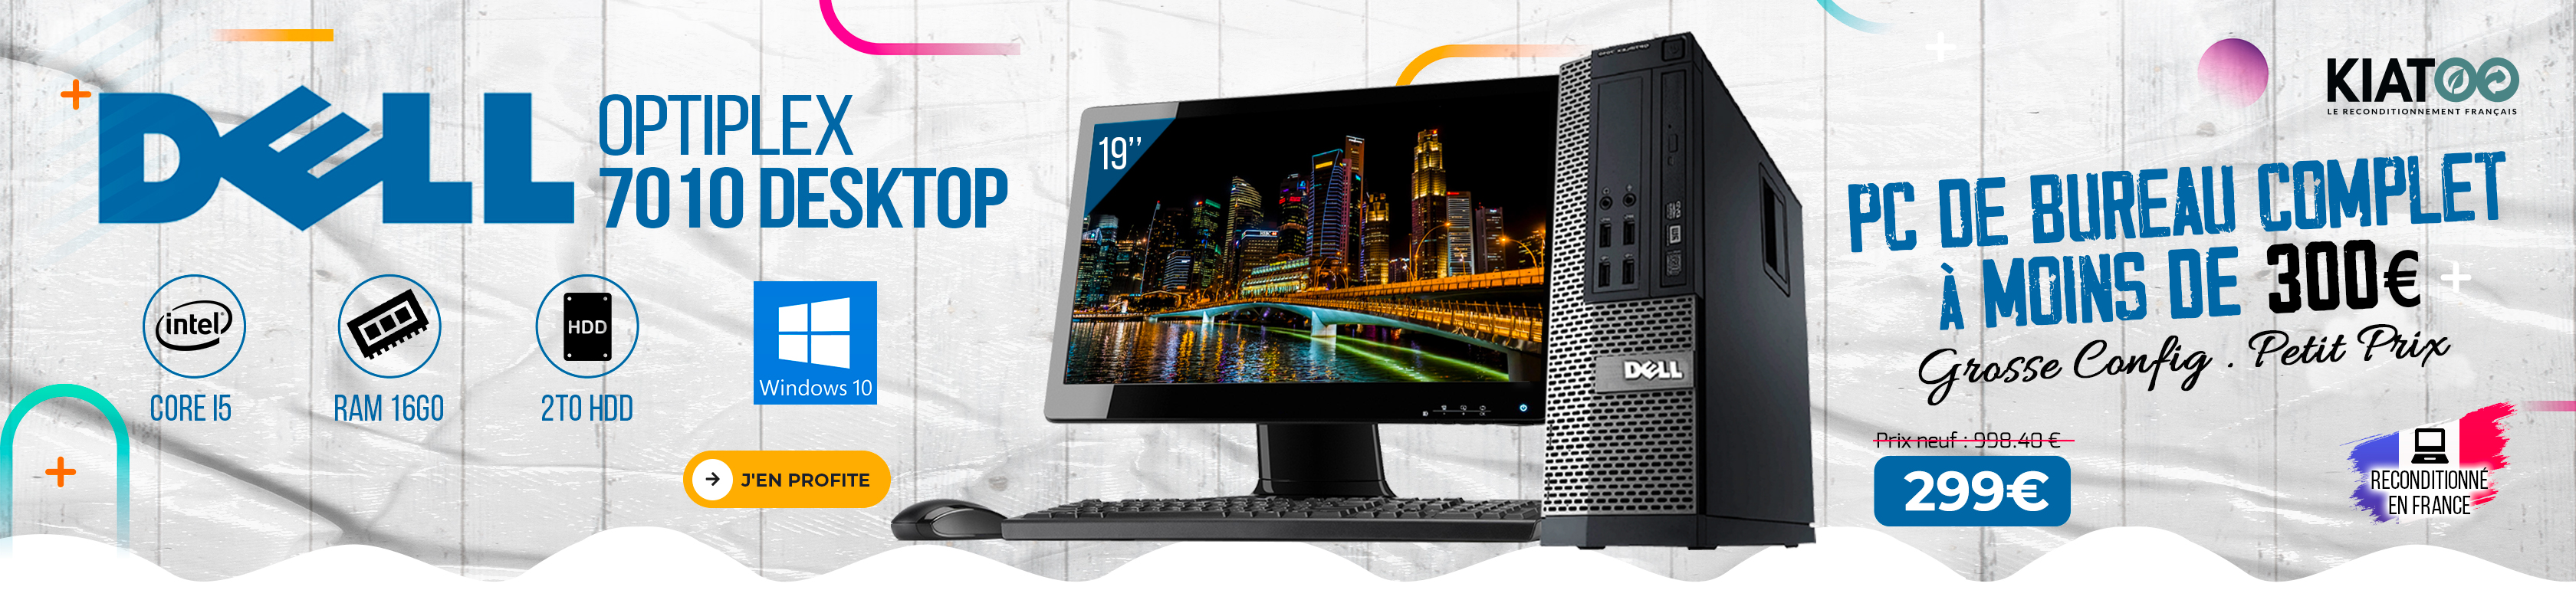 Dell Optiplex 7010 Desktop i5 + Écran 19" 16Go RAM 2To HDD Windows 10